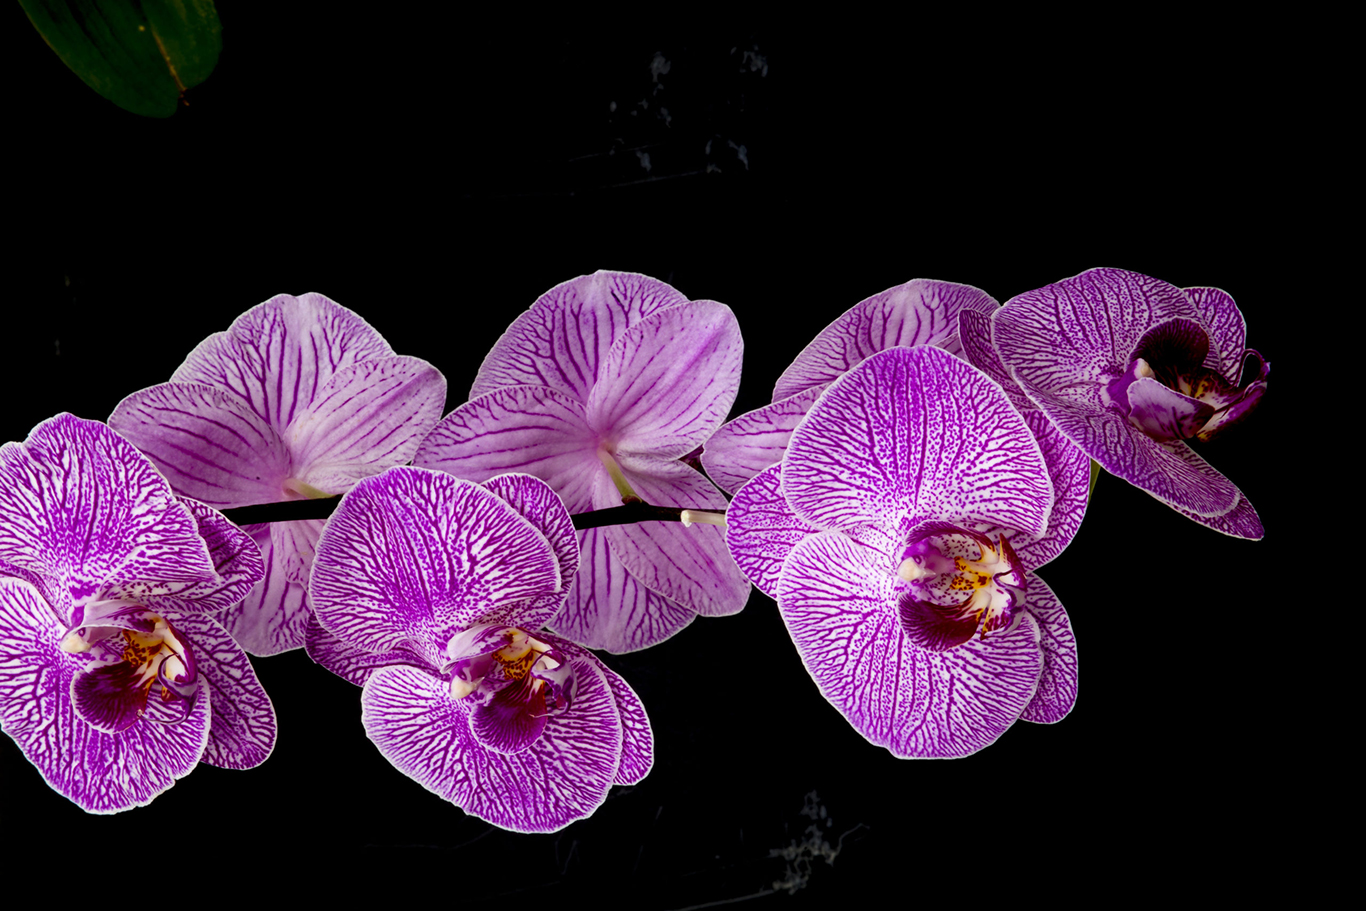 Invernadero orquideas de Rosa, Castellon. Plantas y flores *** Local Caption *** Oval Flores